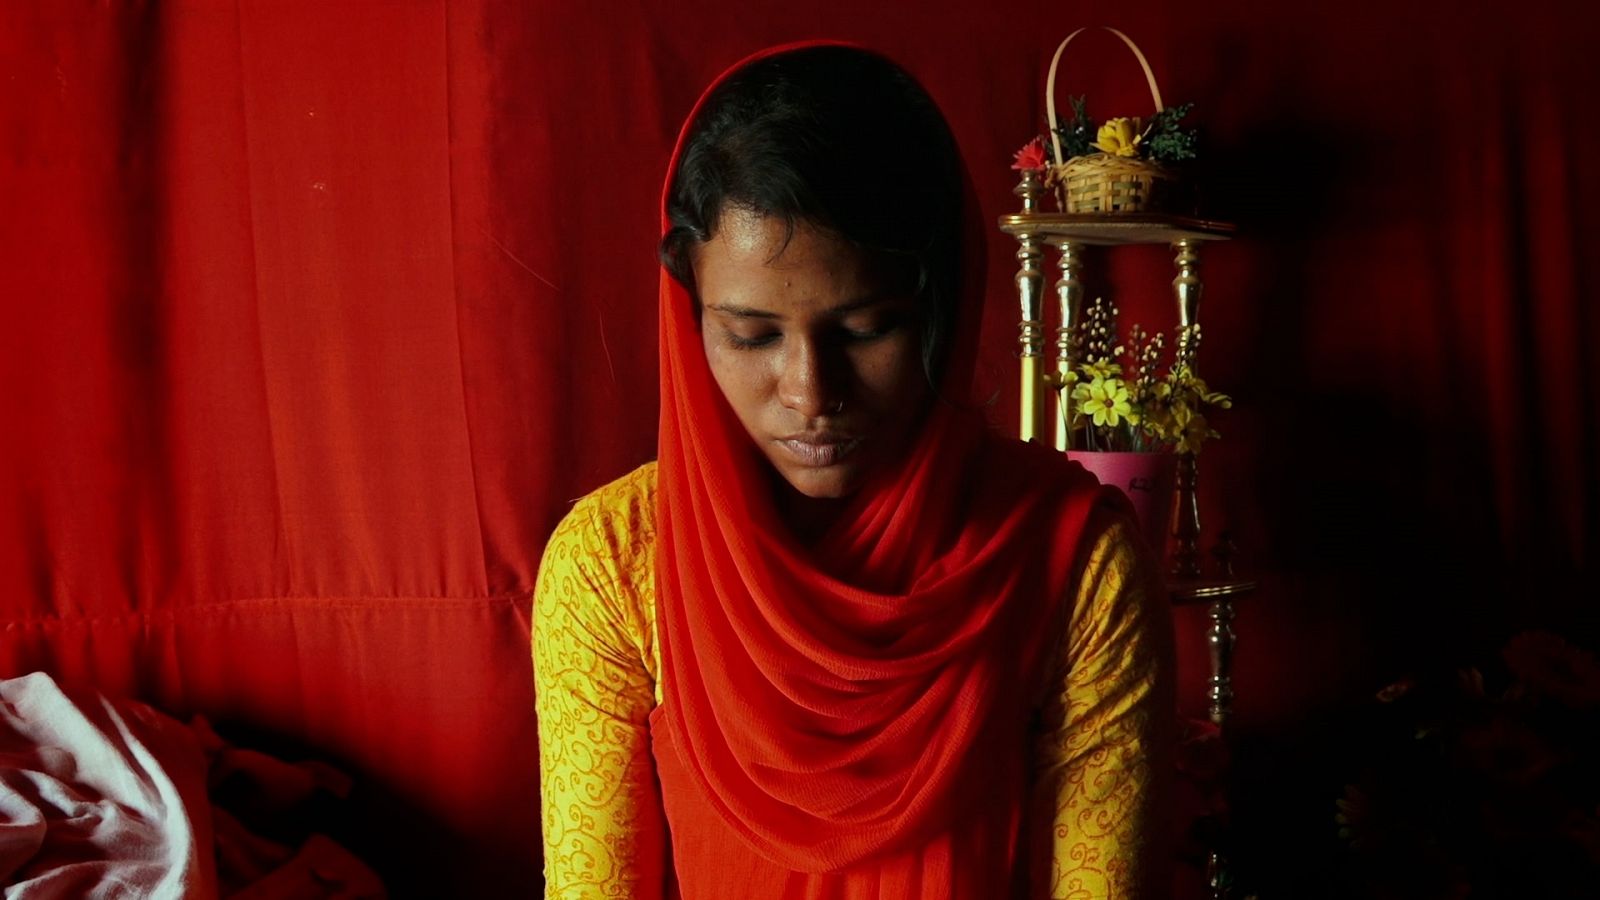 Nupur fue obligada a prostituirse cuando tenía 14 años en un burdel de Bangladesh